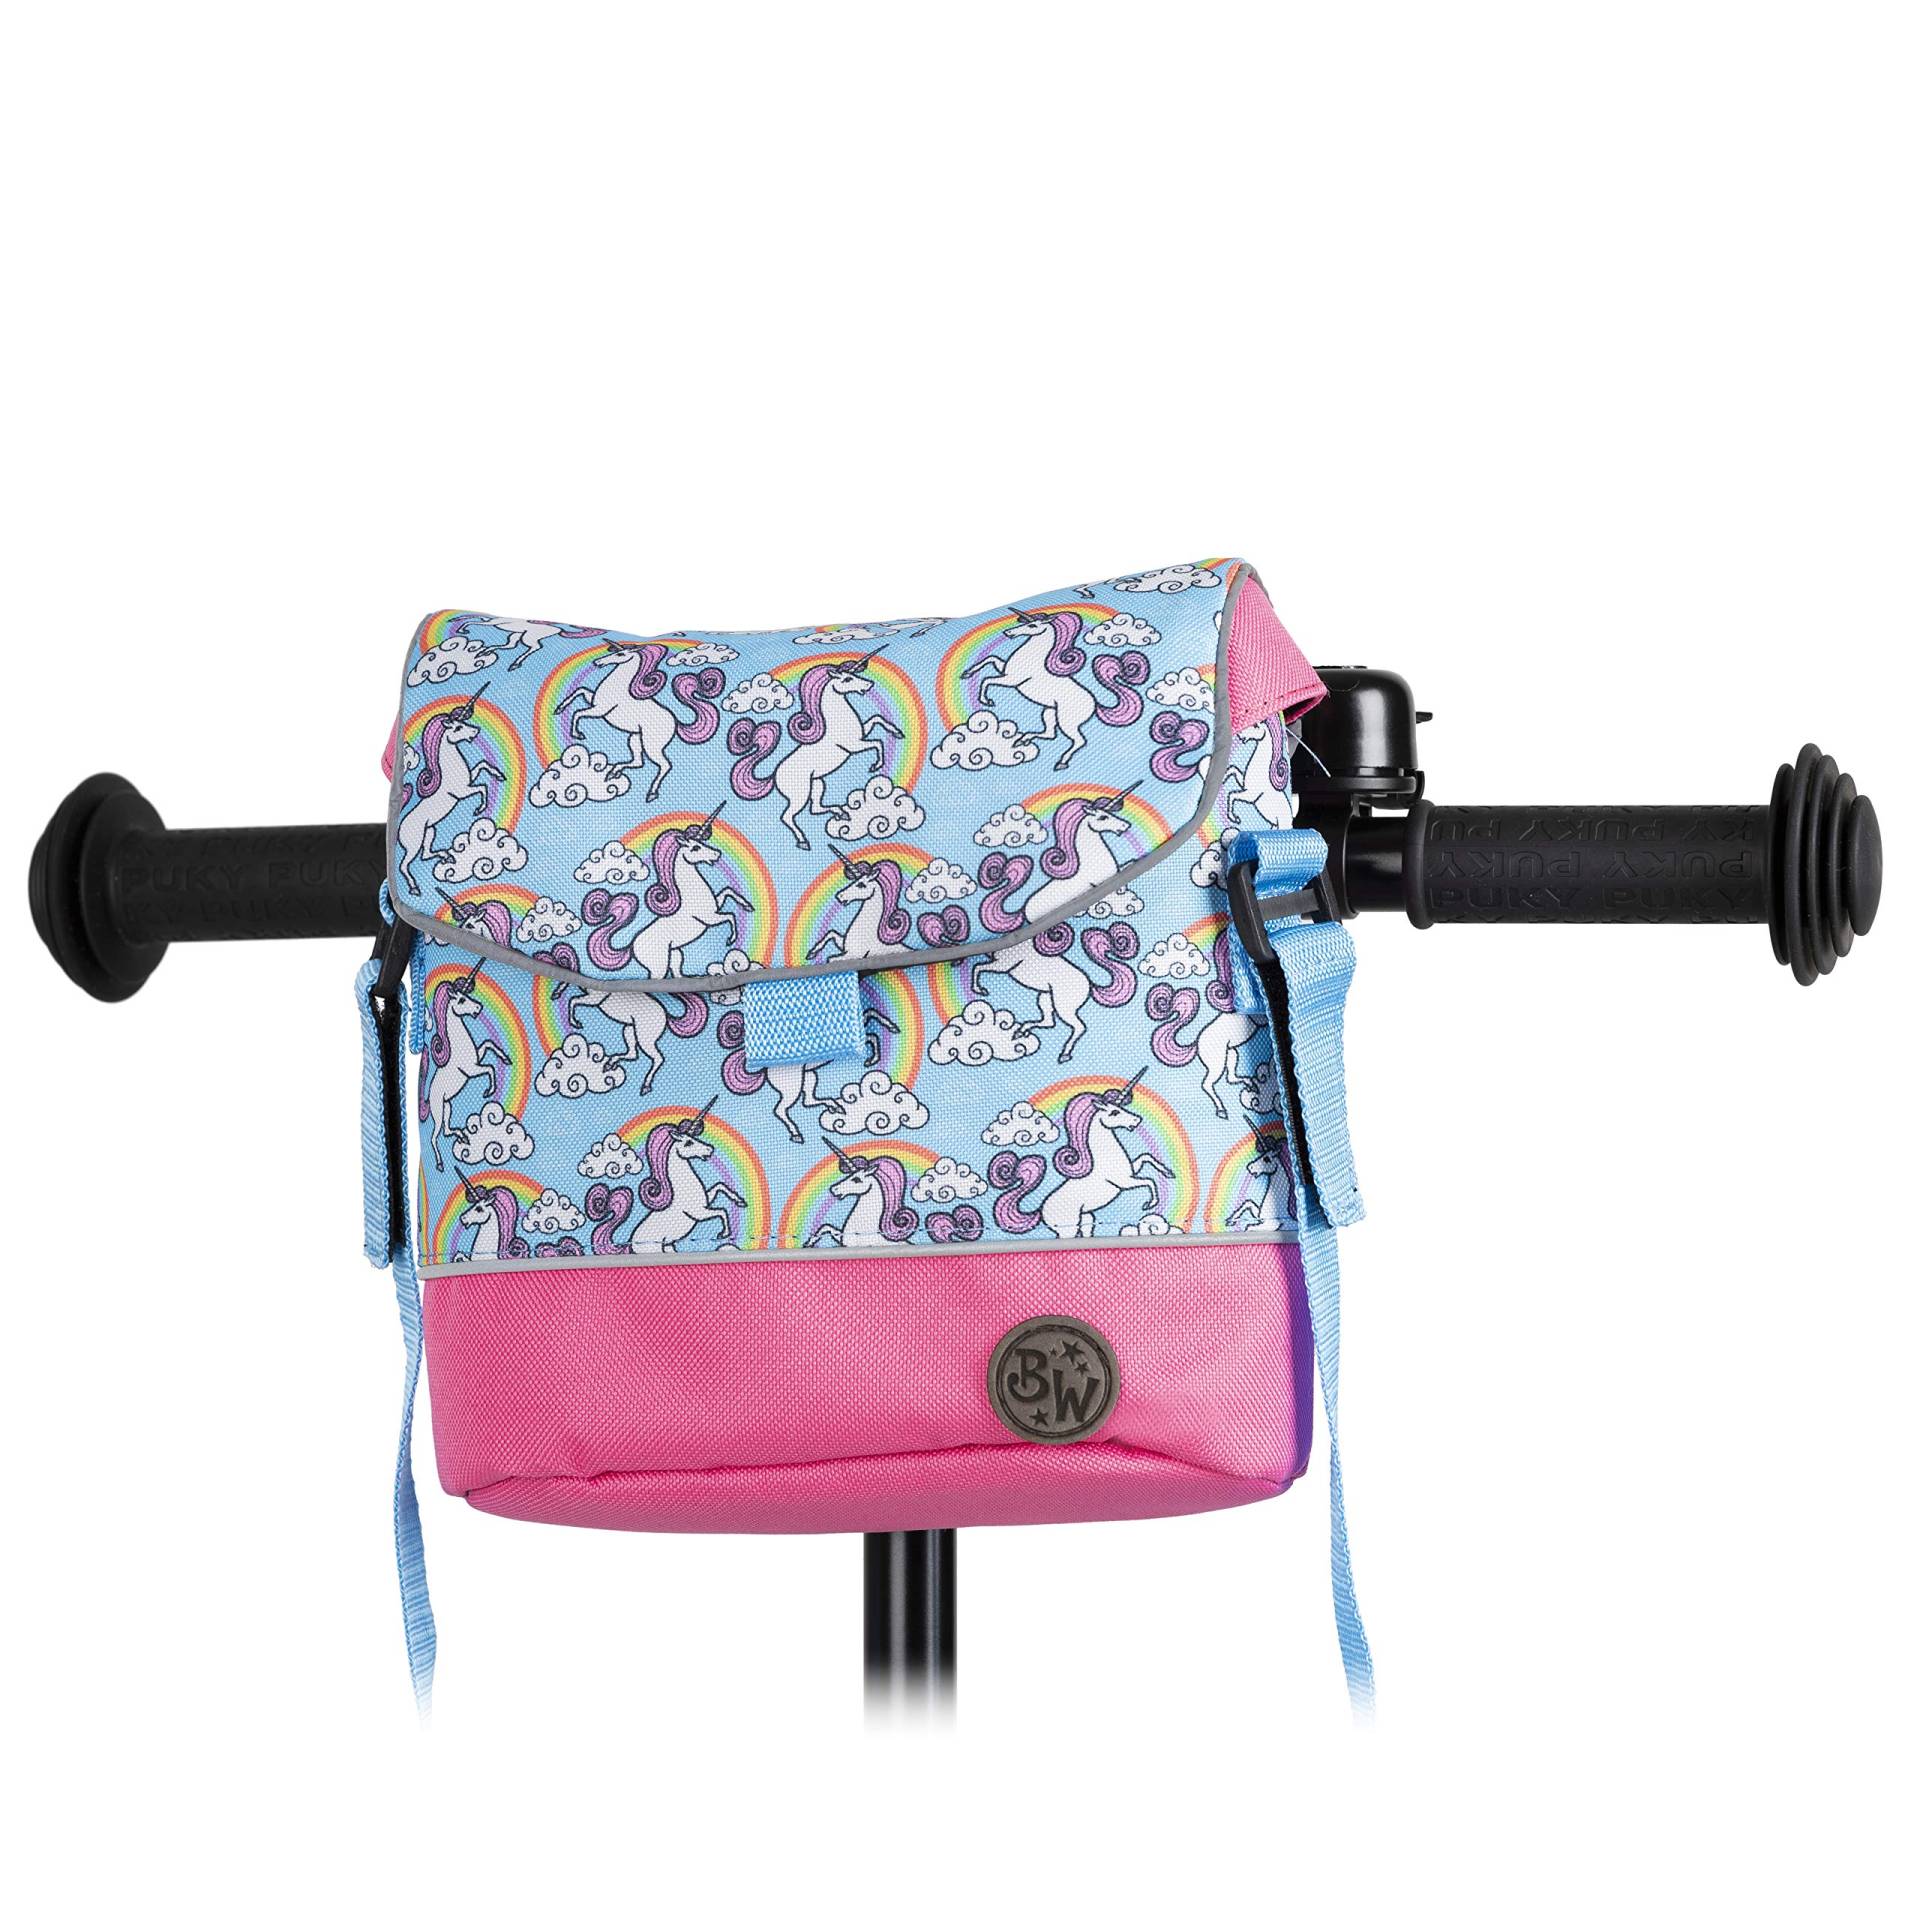 BAMBINIWELT Lenkertasche Tasche kompatibel mit Puky mit Woom Laufrad Räder Roller Fahrrad Fahrradtasche für Kinder wasserabweisend mit Schultergurt (Modell 4) von BambiniWelt by Rafael K.